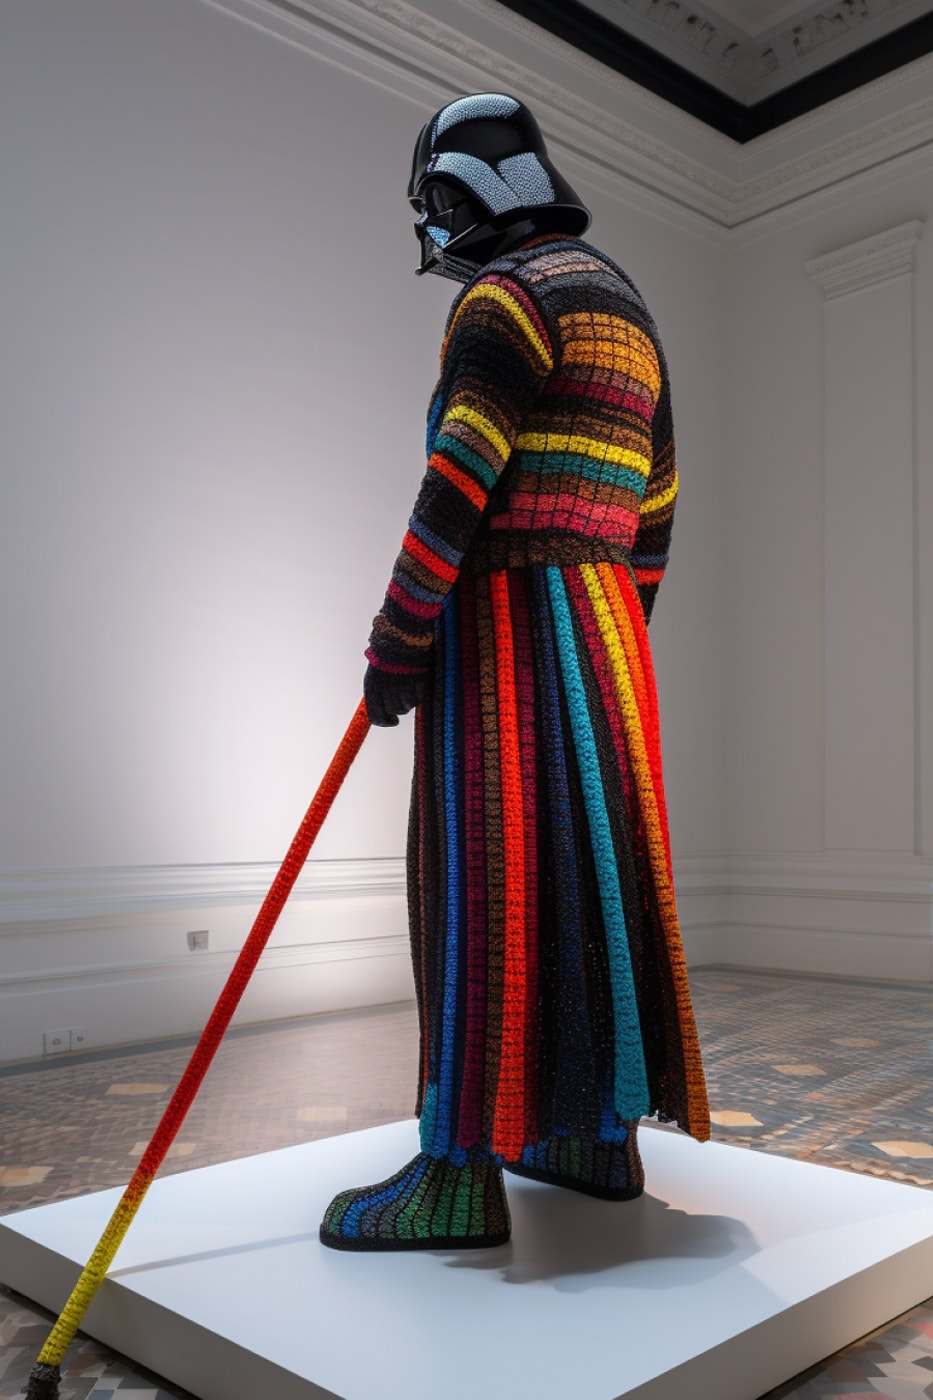 藝術家 Ken Kelleher 打造手工編織服裝「黑武士 Darth Vader」雕塑